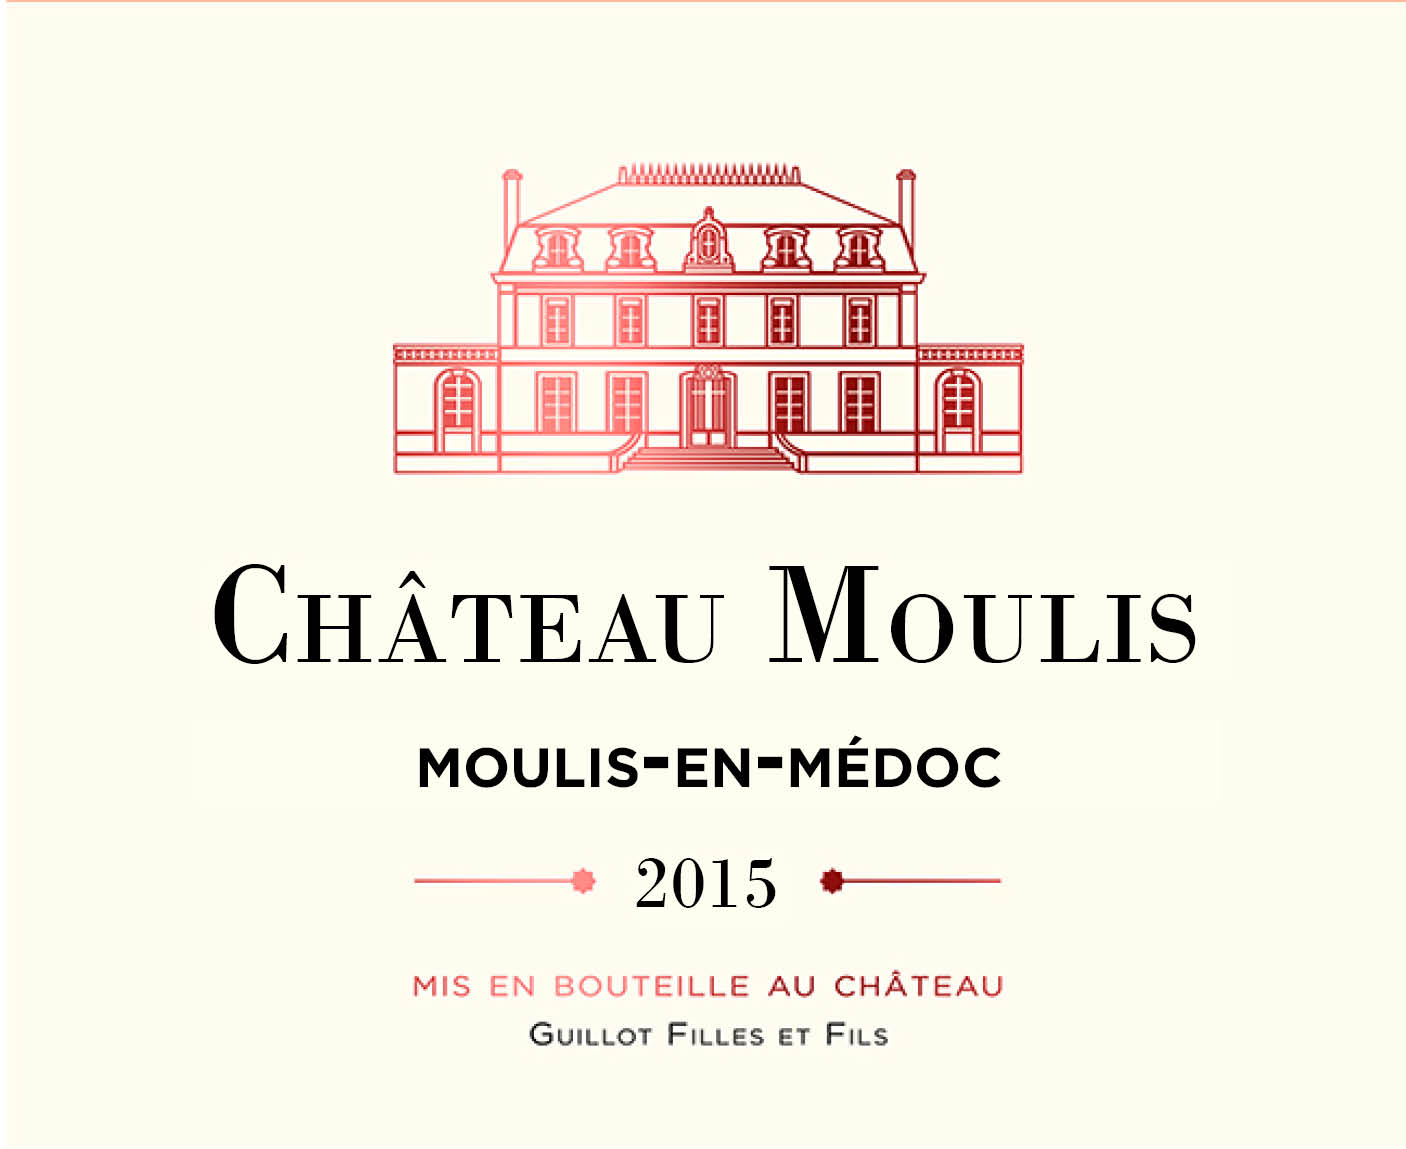 Etiquette Chateau Moulis 15 Official Website Bordeaux Com